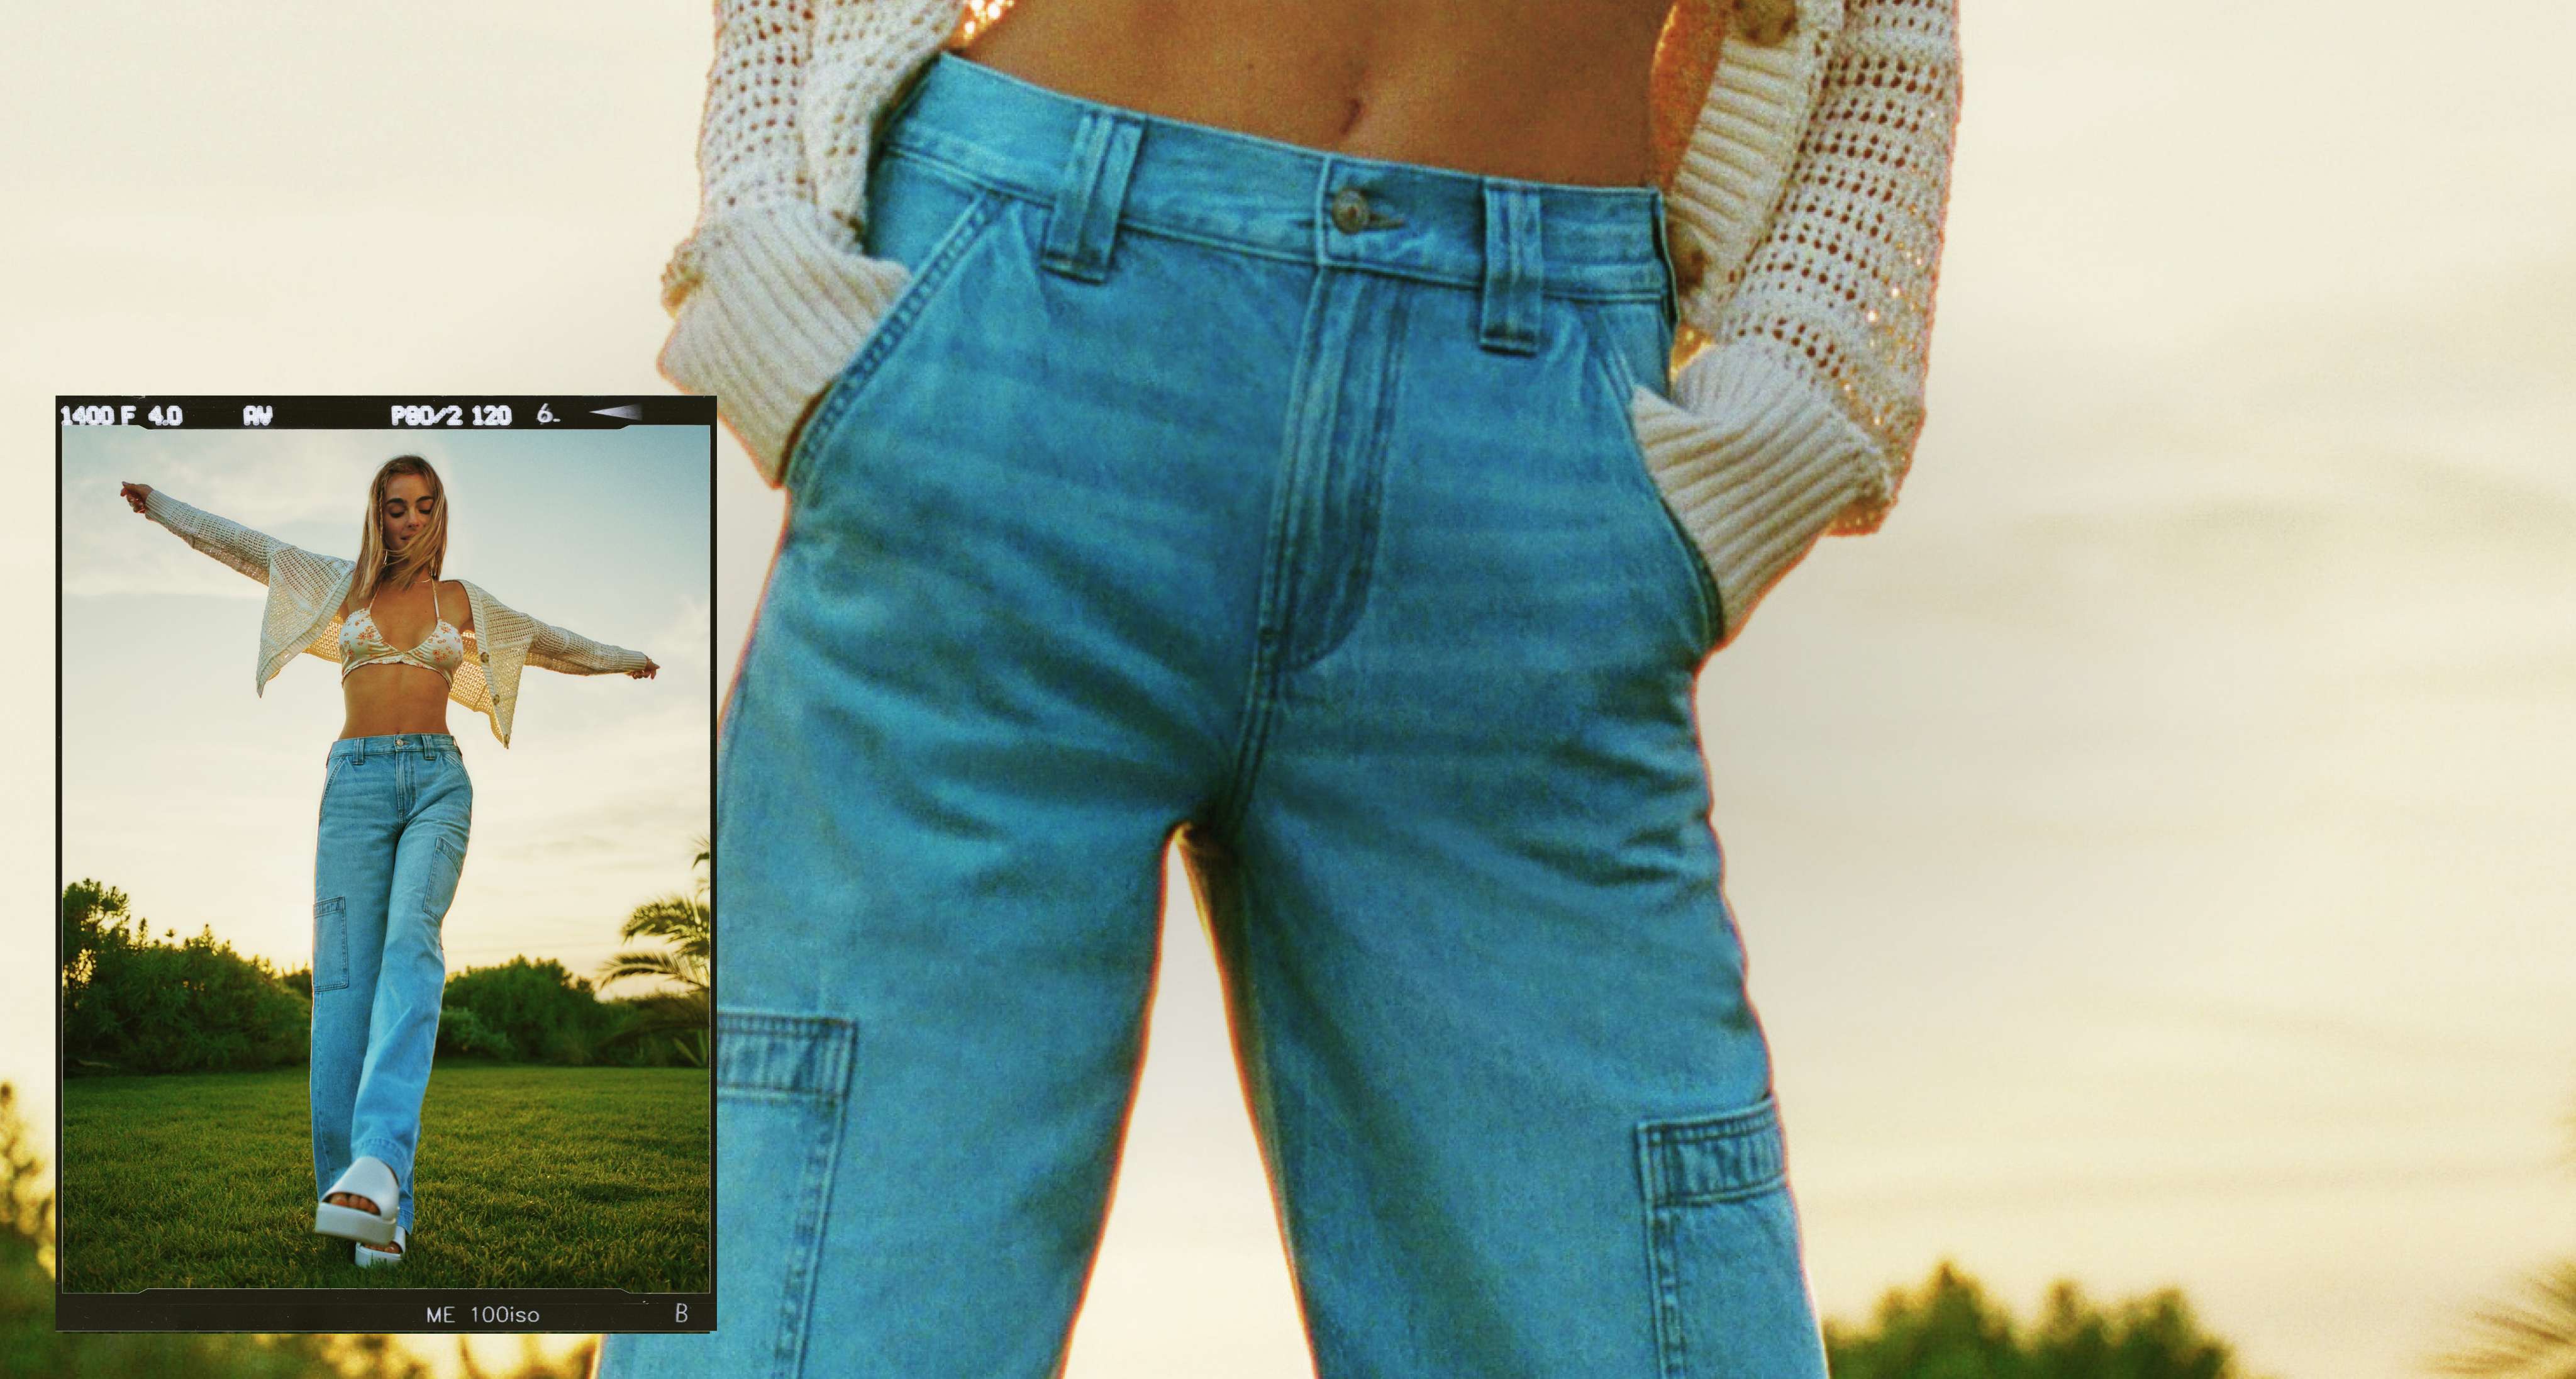 model in grassy field wearing AE jeans